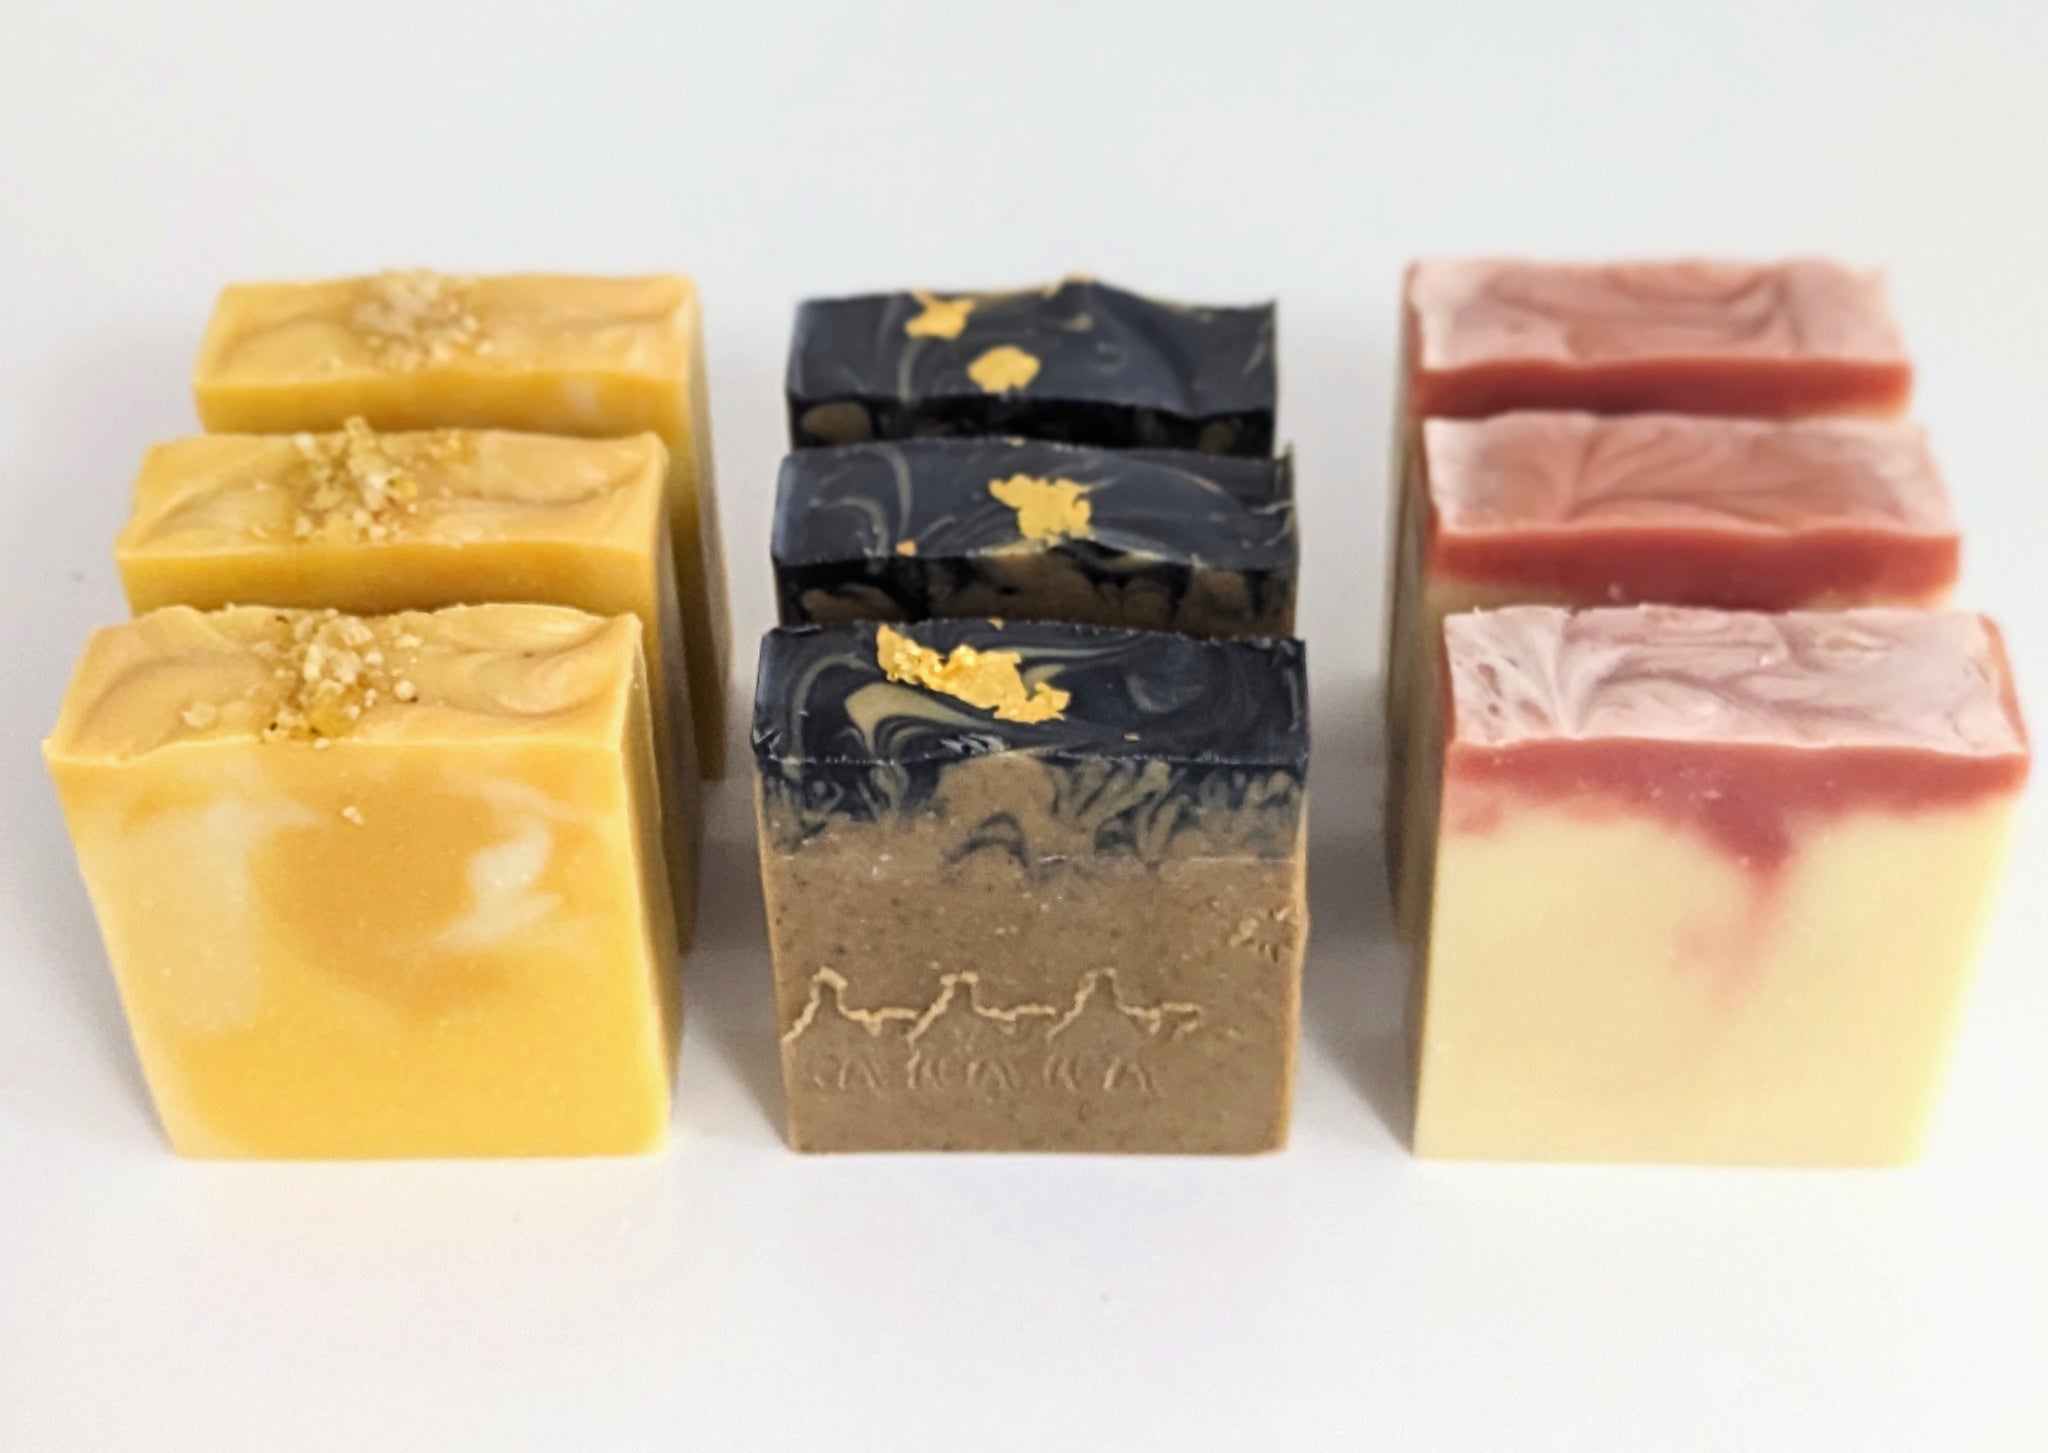 GIFT OF THE MAGI — Siena Soap Company